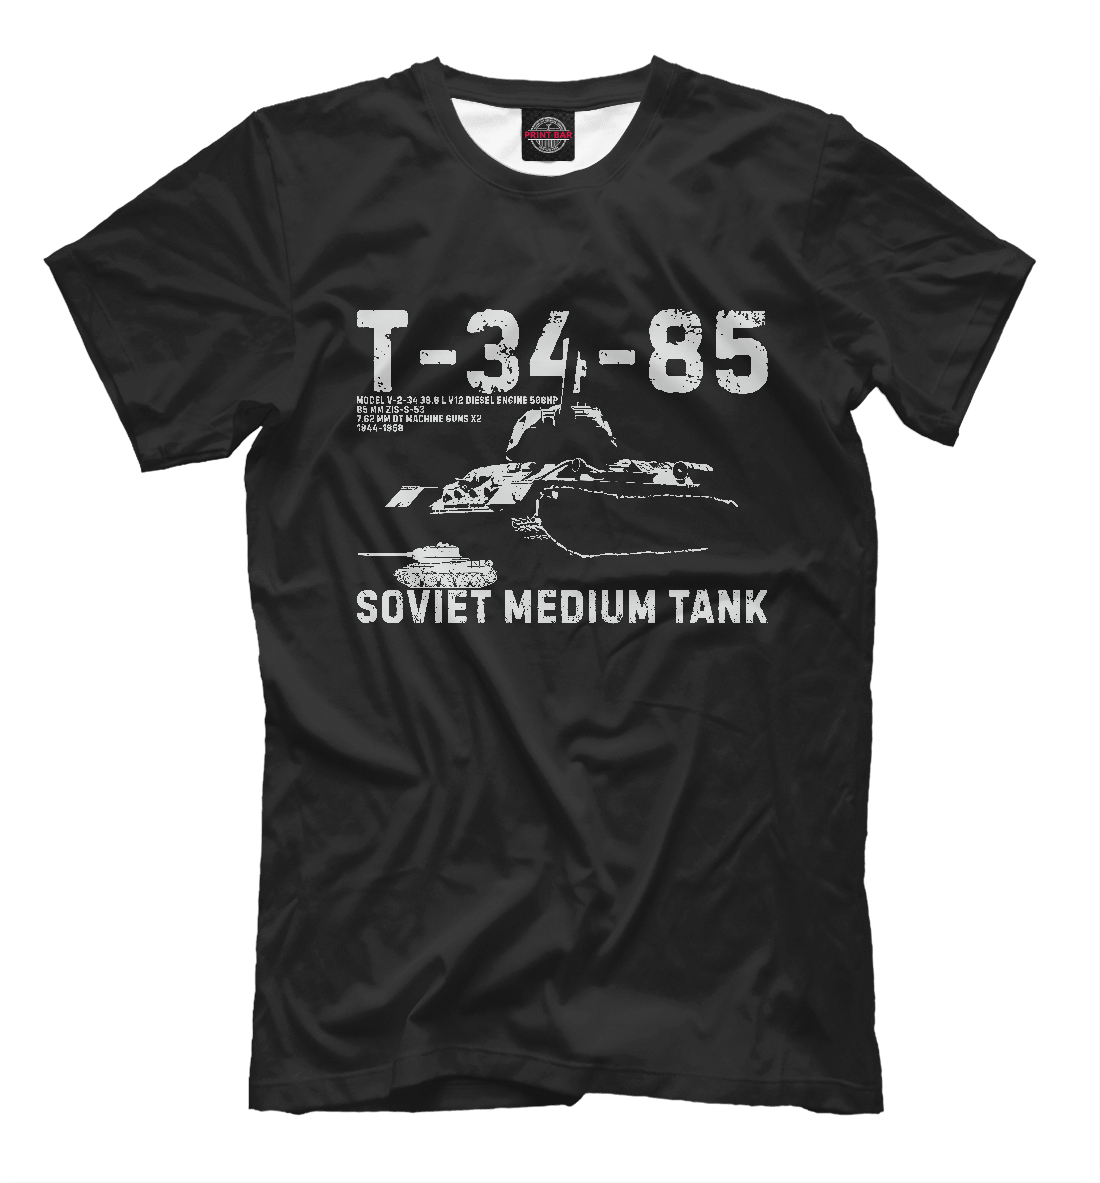 Футболка Т-34-85 советский танк для мужчин, артикул: TNK-419312-fut-2mp